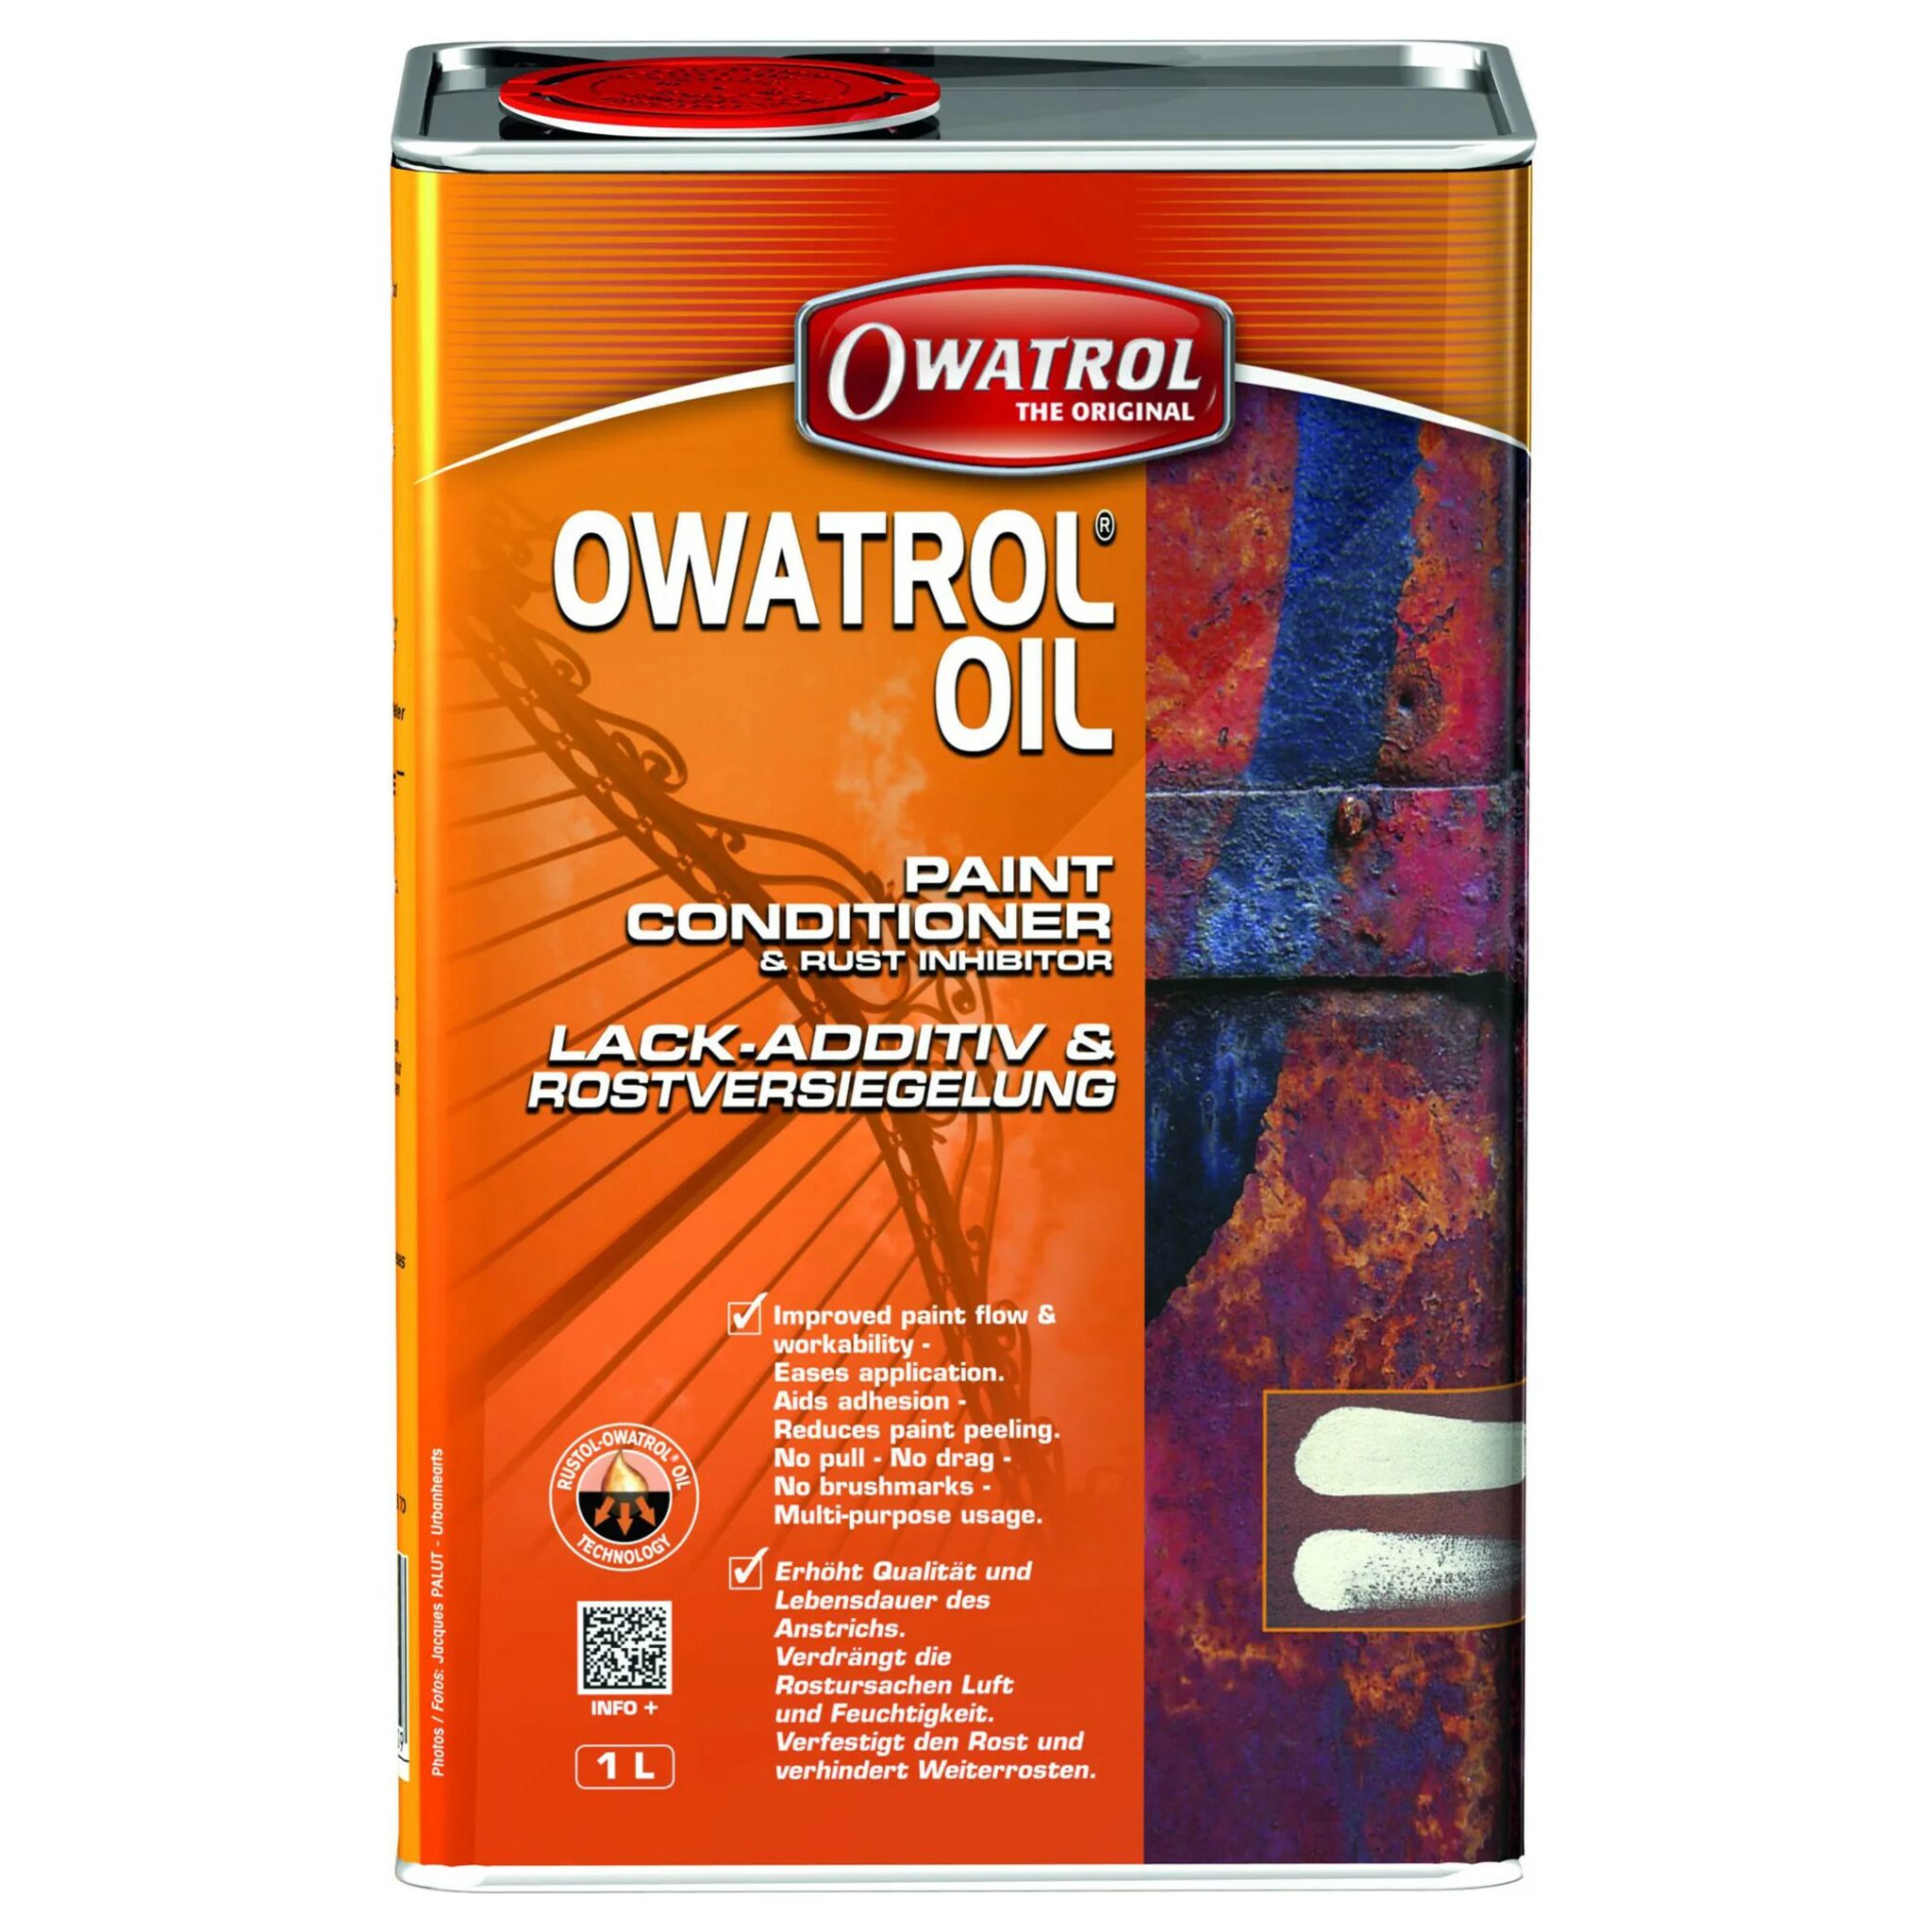 OWATROL OIL / MARINE OIL